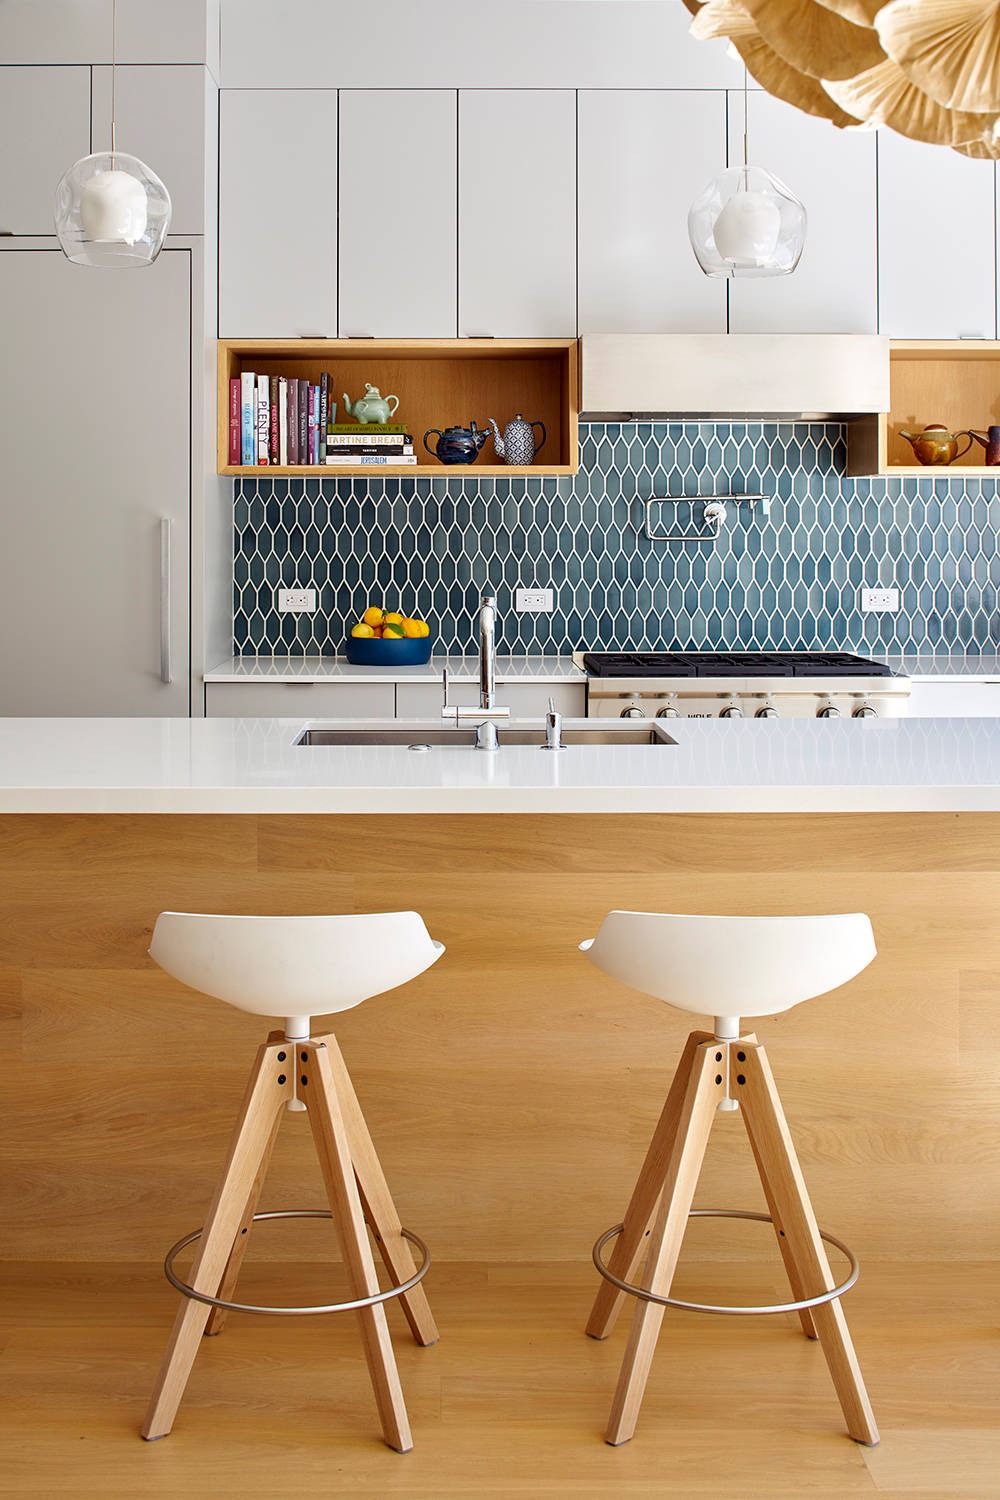 White Cabinets Quartz Countertops Undermount Sink Blue Tiles Kitchen Sink Stainless Steel